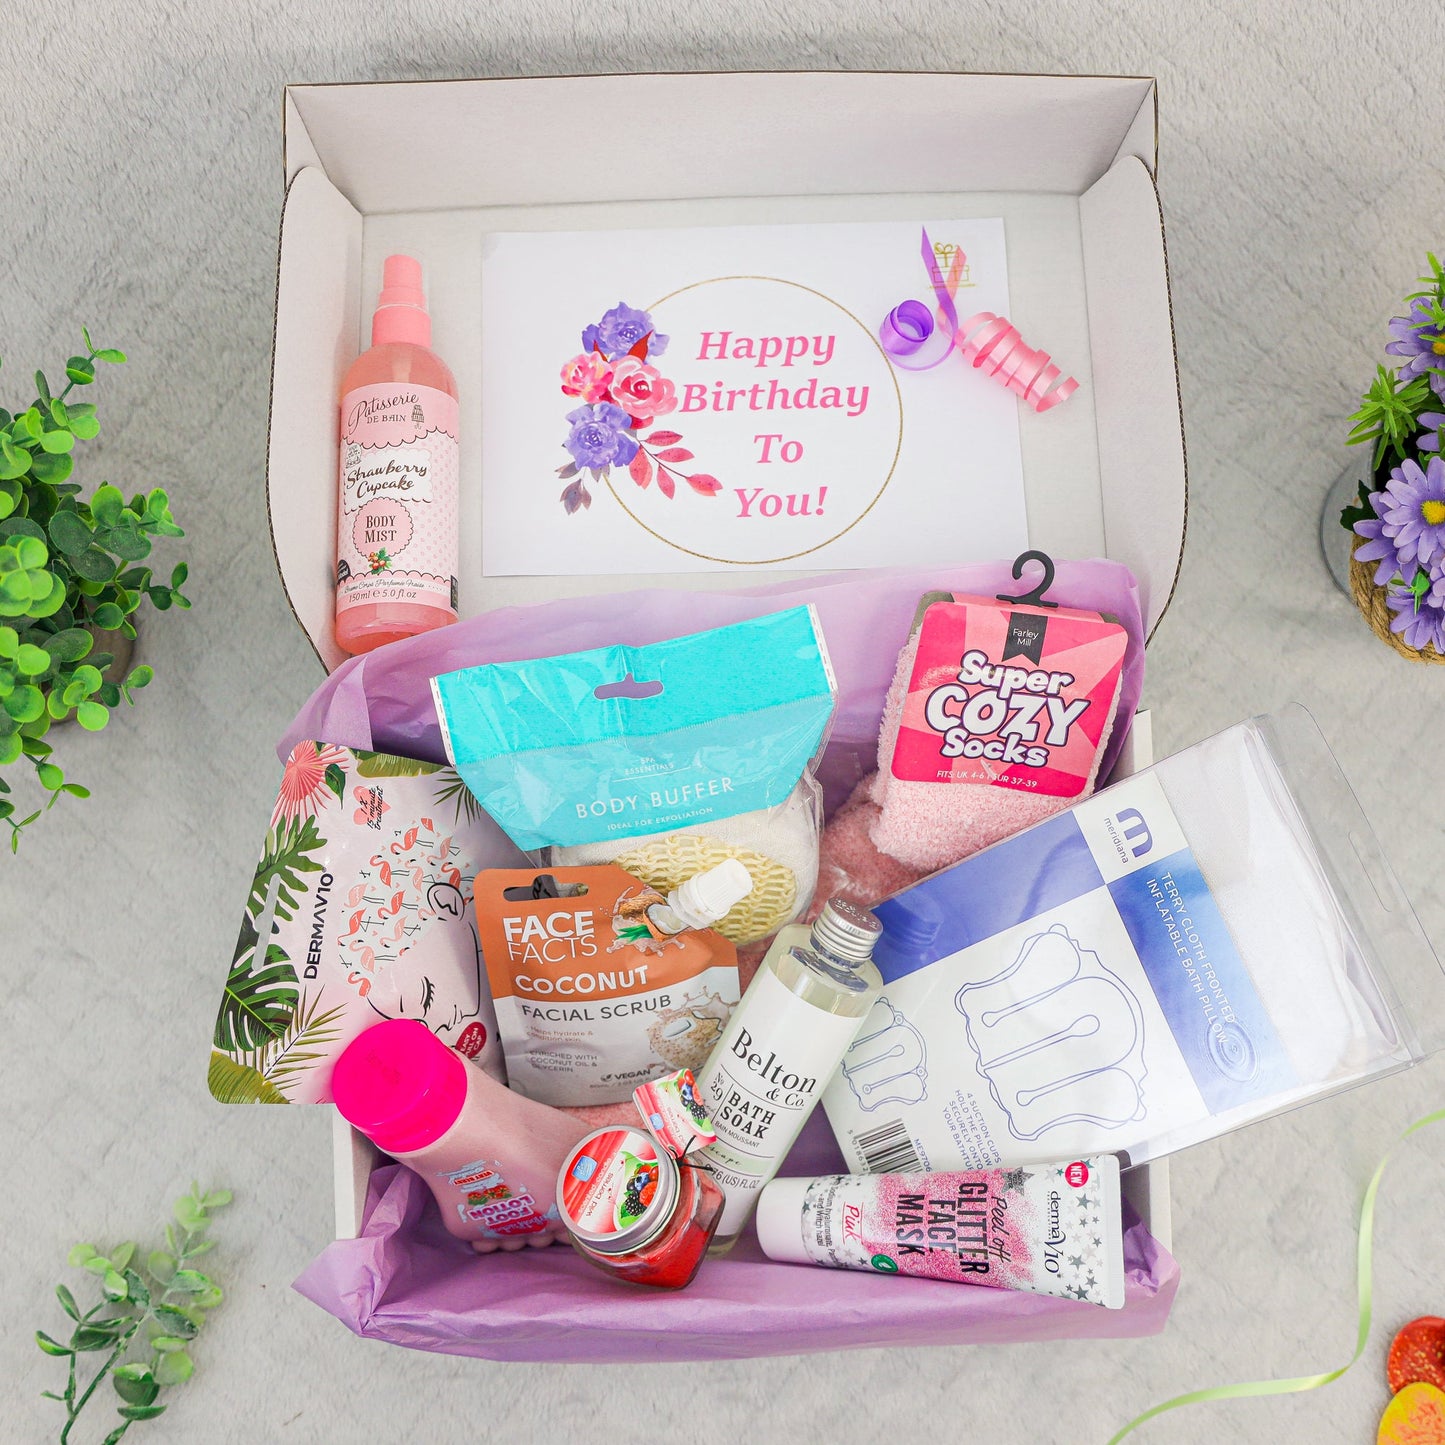 Happy Birthday Teenagers Spa Pamper Hamper Gift Kit  - Always Looking Good -   